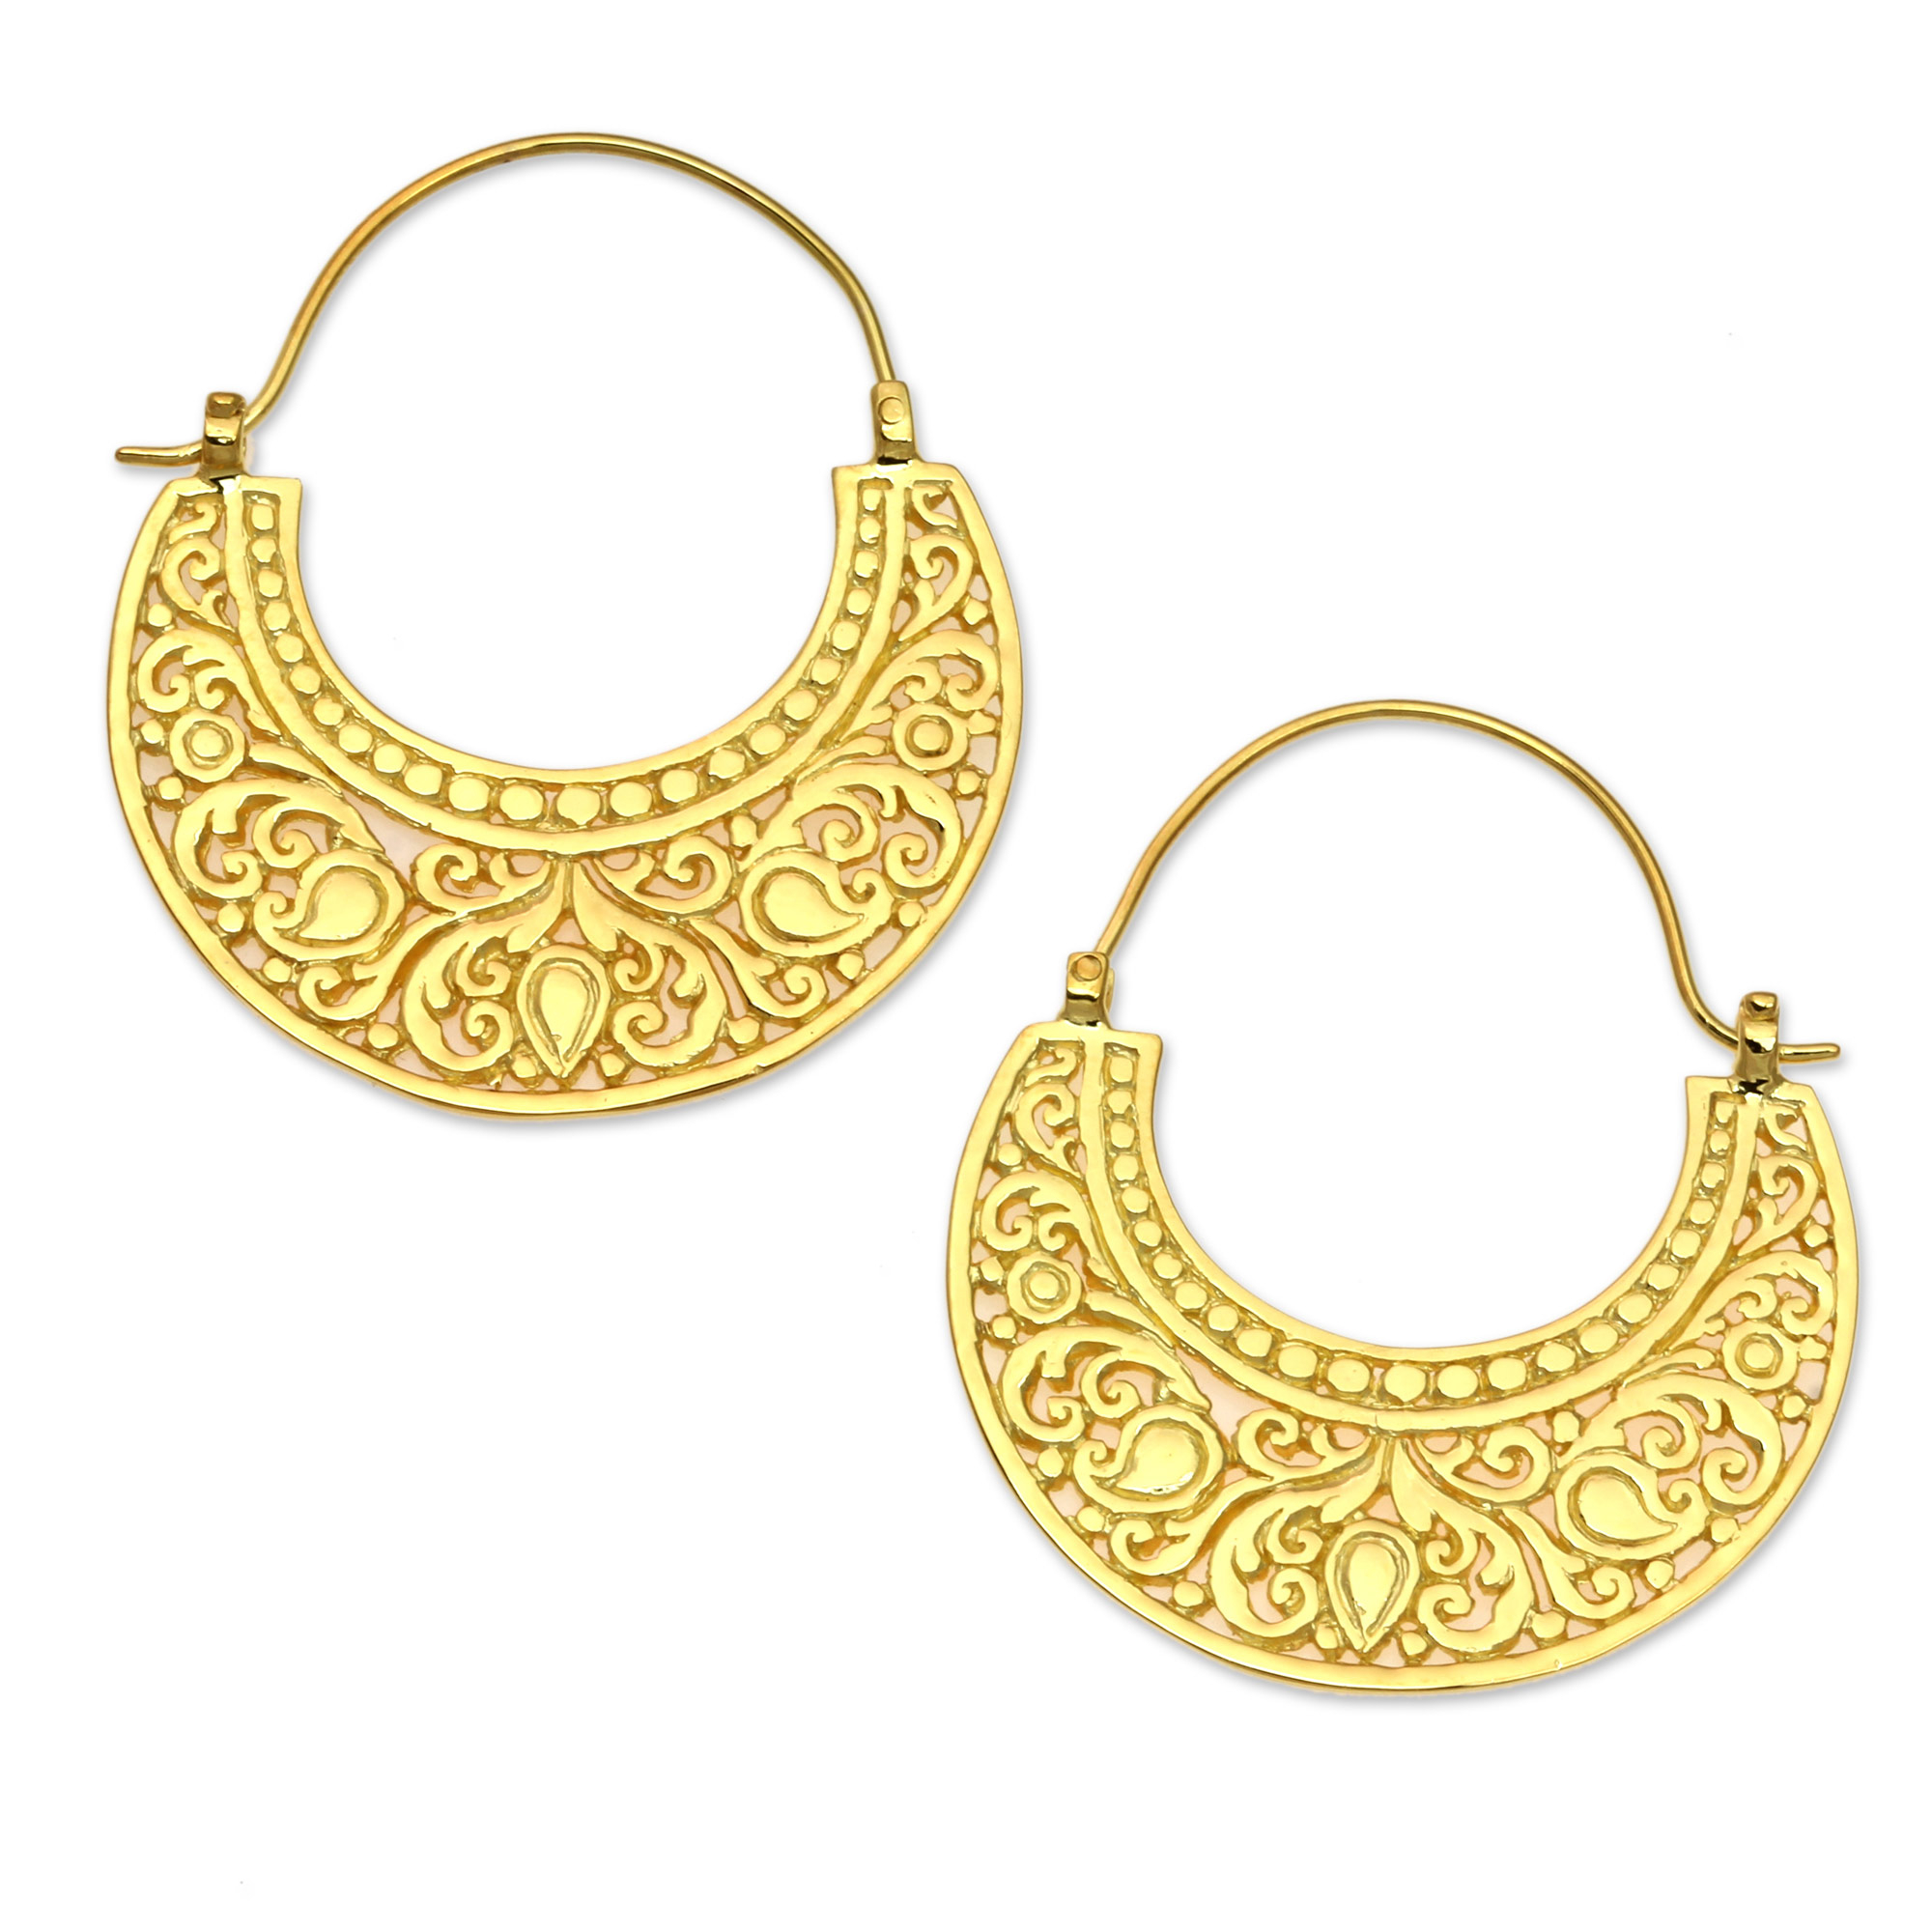 Ornate 22k Gold Vermeil Hoop Earrings from Indonesia - Garden of Eden ...